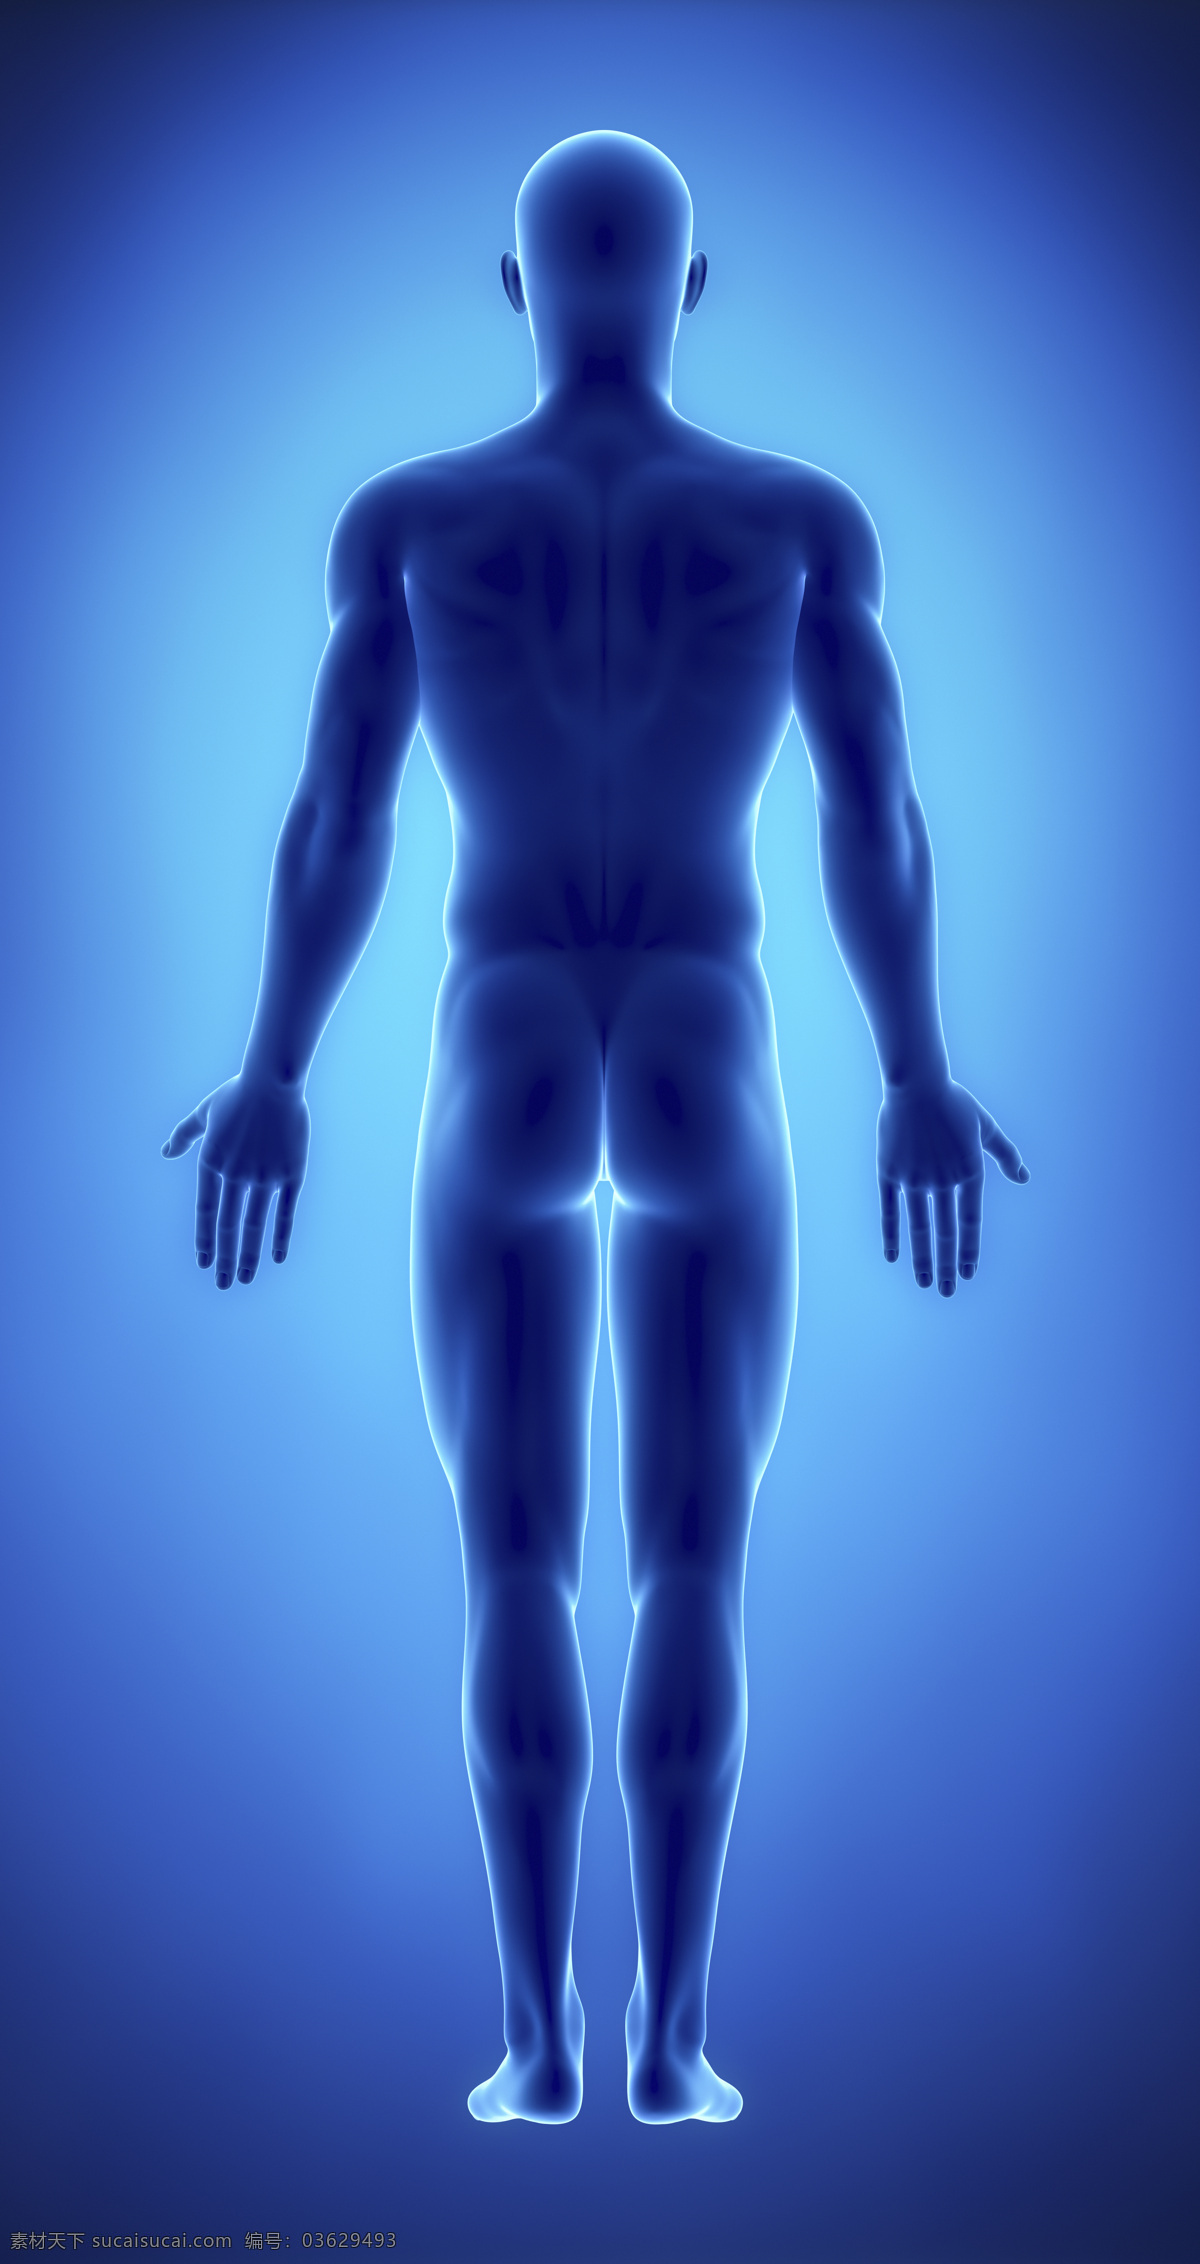 男性 人体 背部 男性人体背部 肌肉 男性人体器官 医疗科学 医学 人体器官图 人物图片